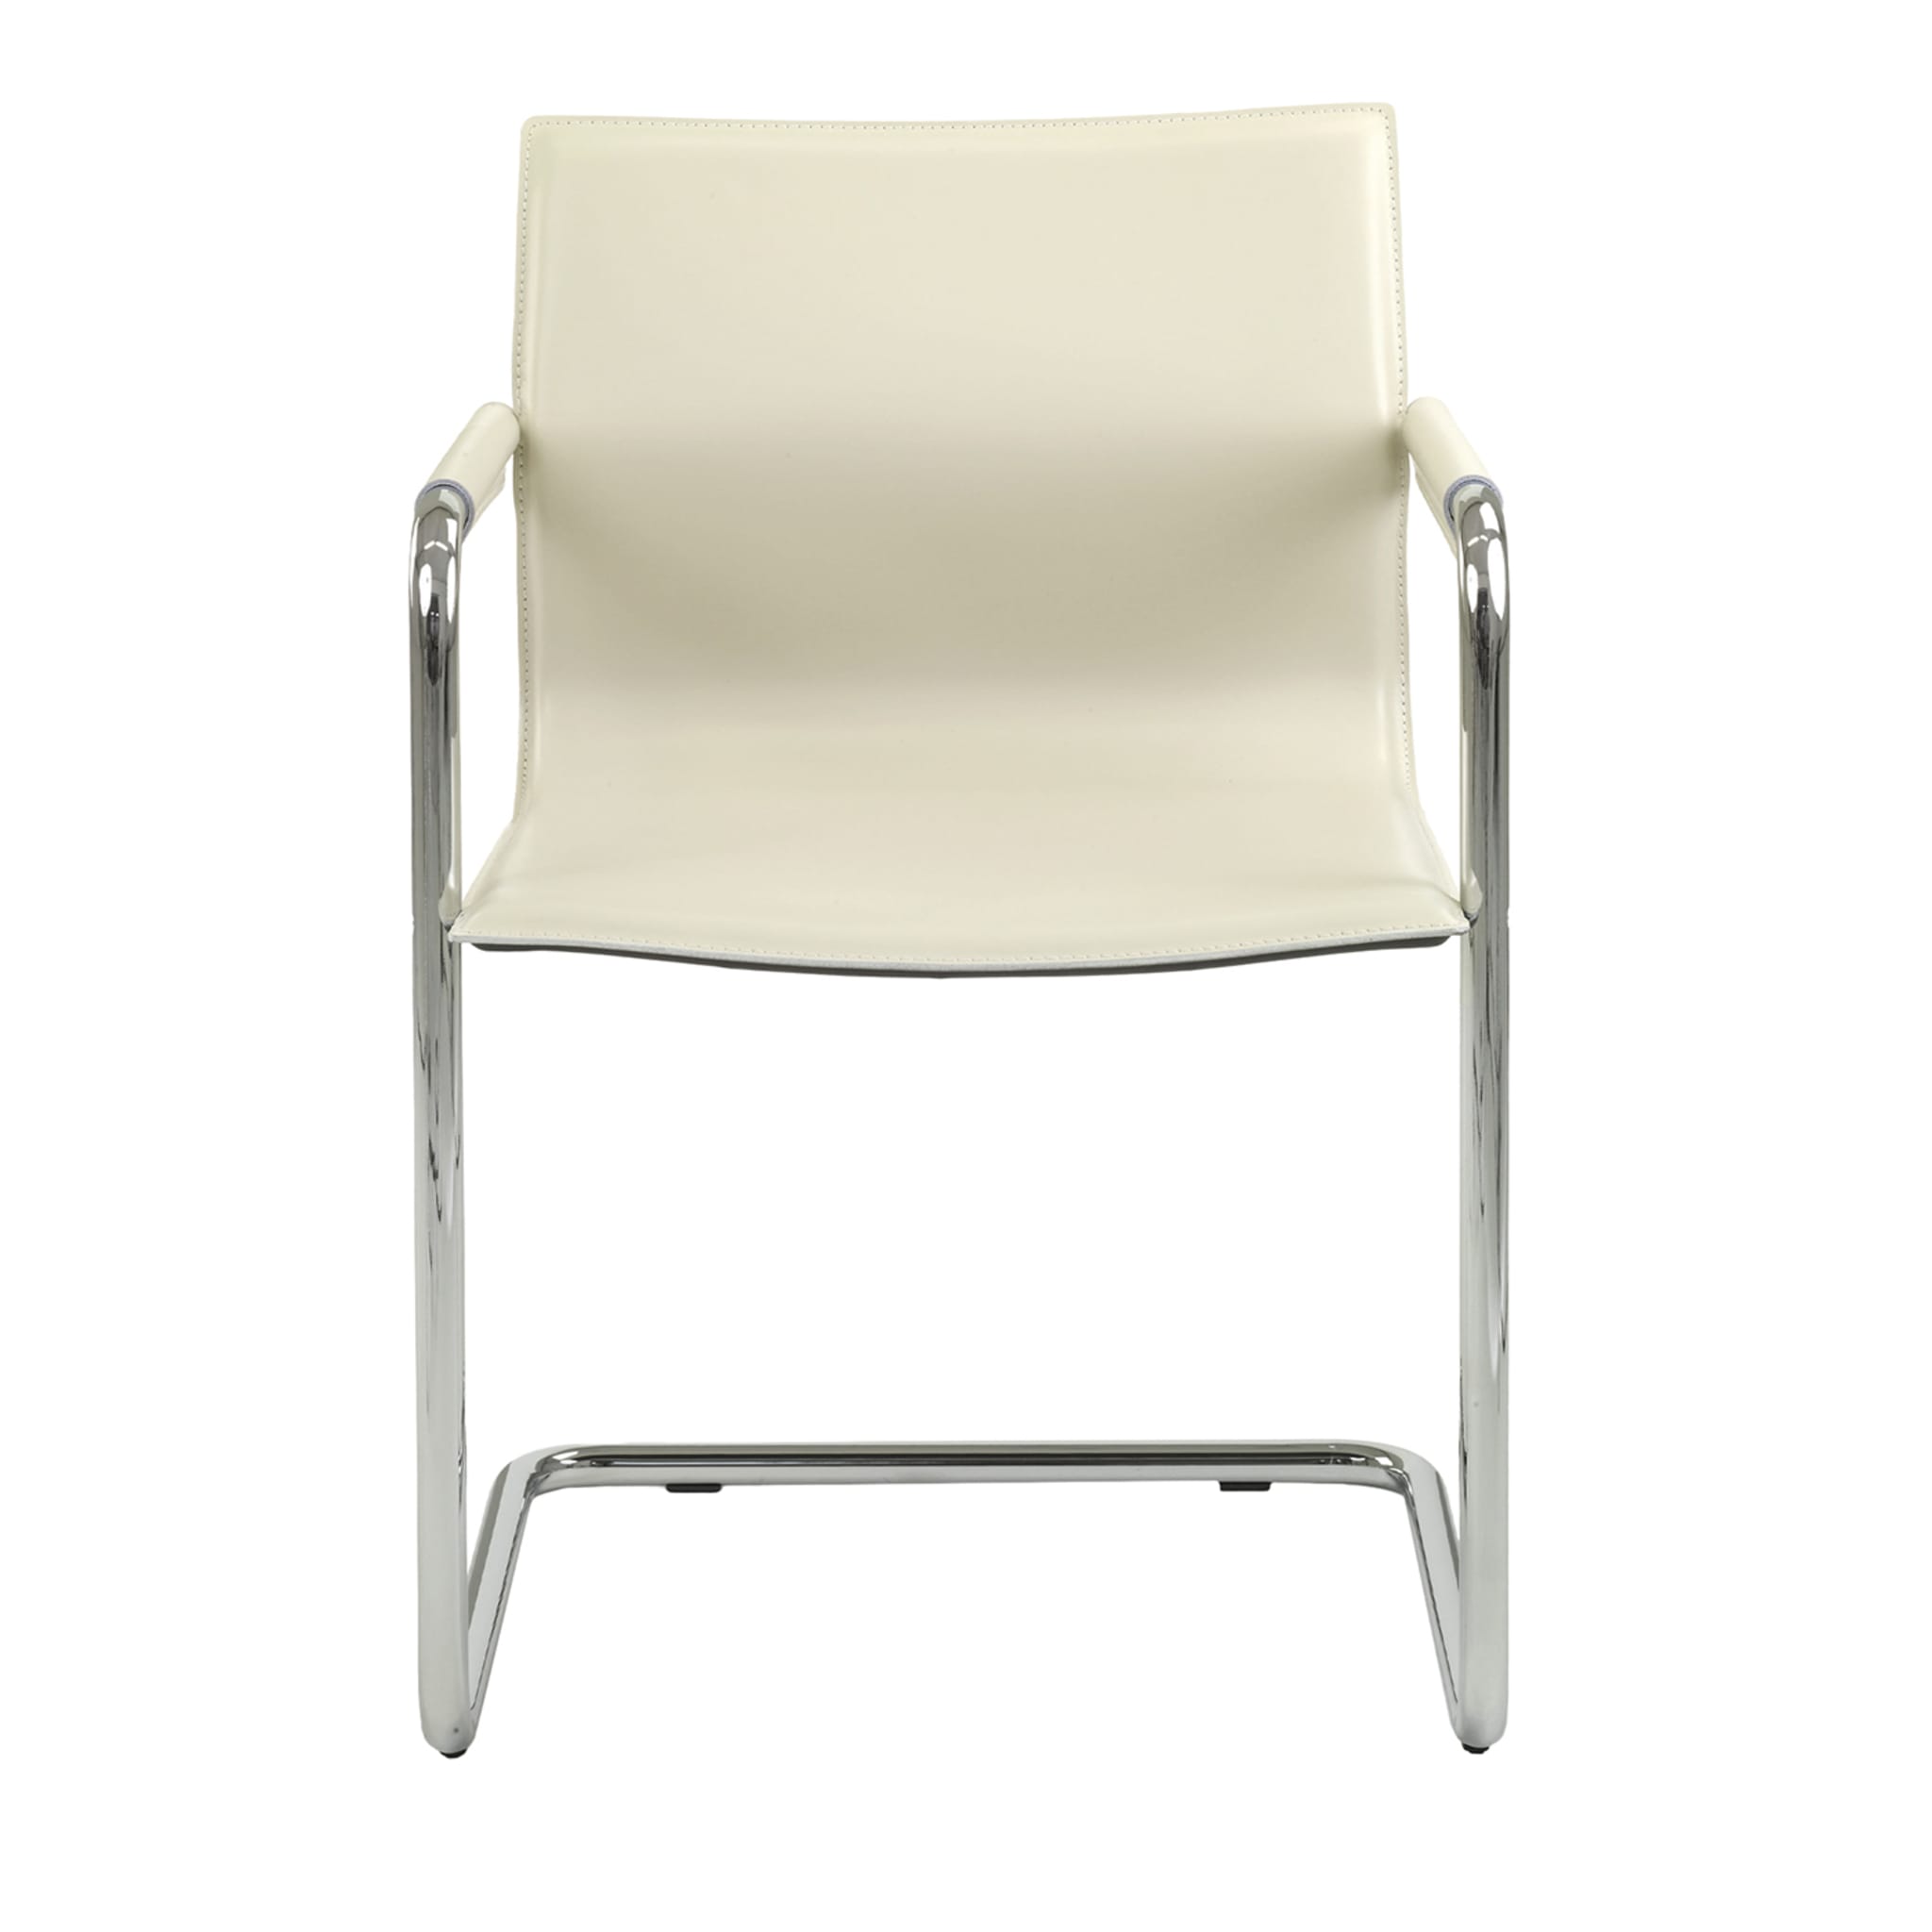  Lybra Stuhl mit bedeckten Armlehnen - Hauptansicht